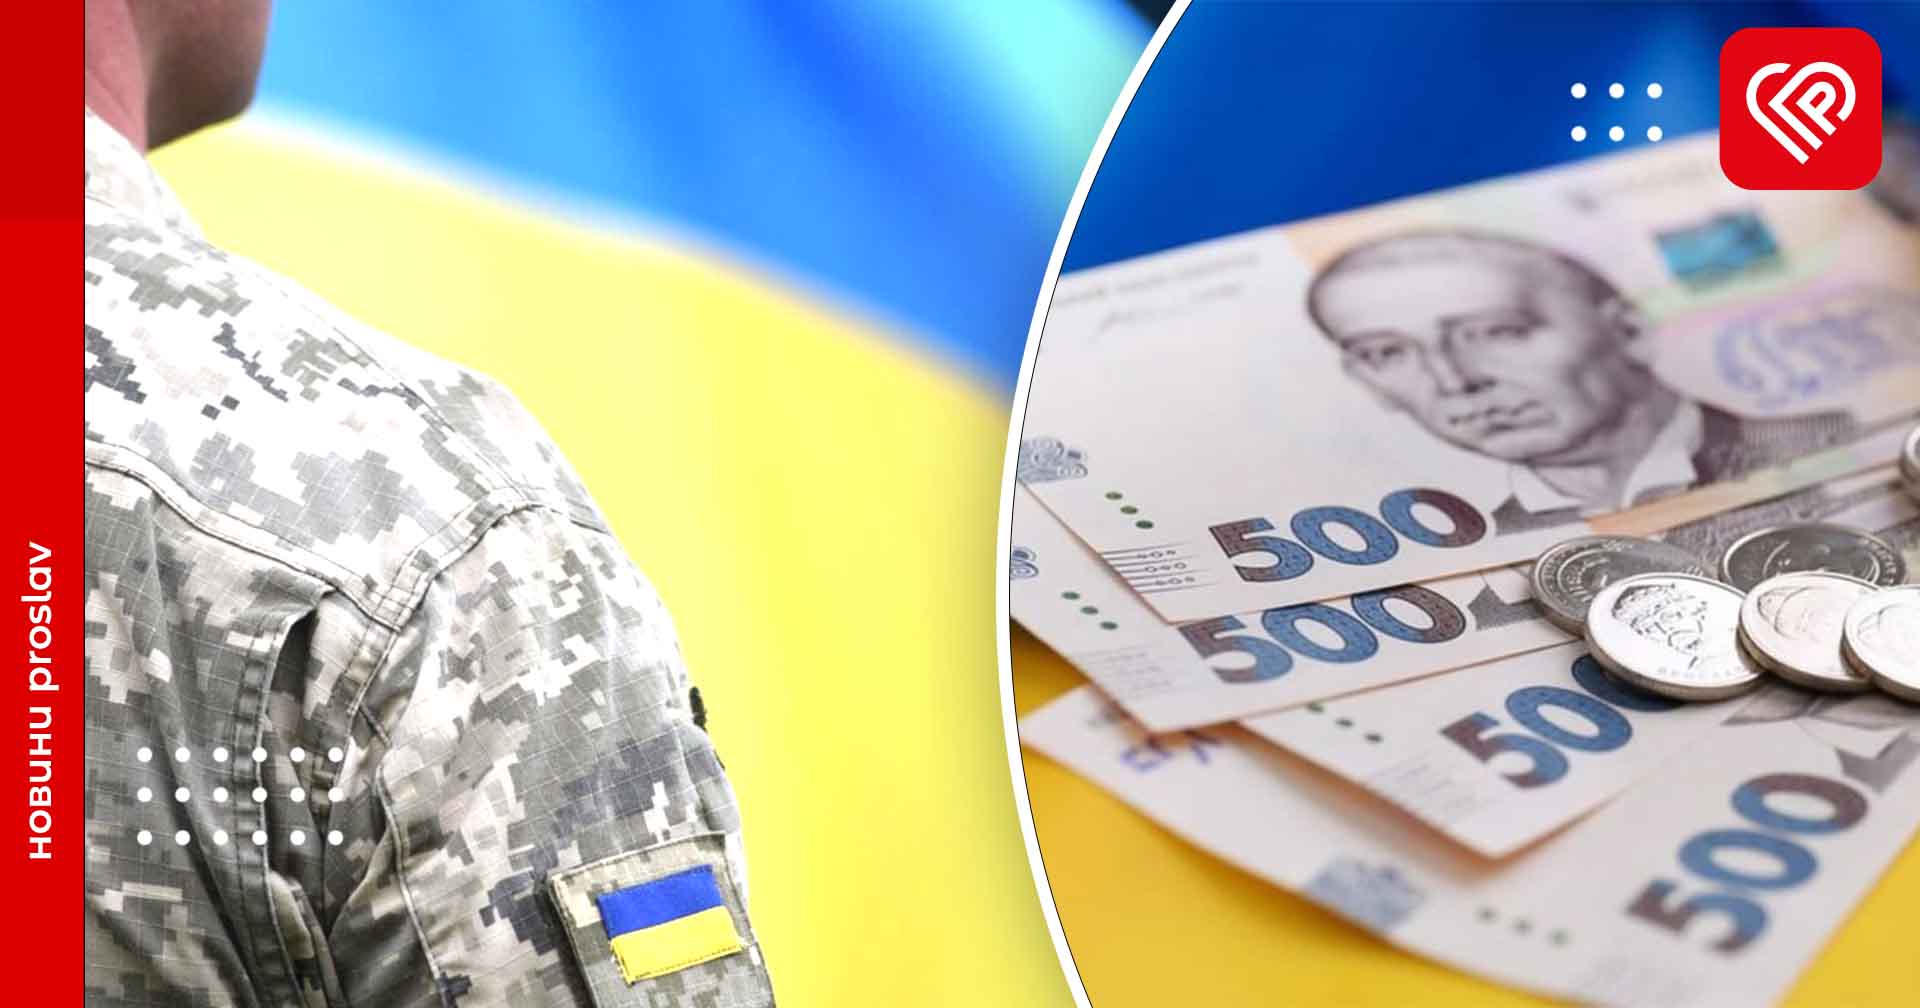 Українці задонатили понад 100 мільярдів гривень від початку повномасштабного вторгнення - підрахунки СтратКому ЗСУ